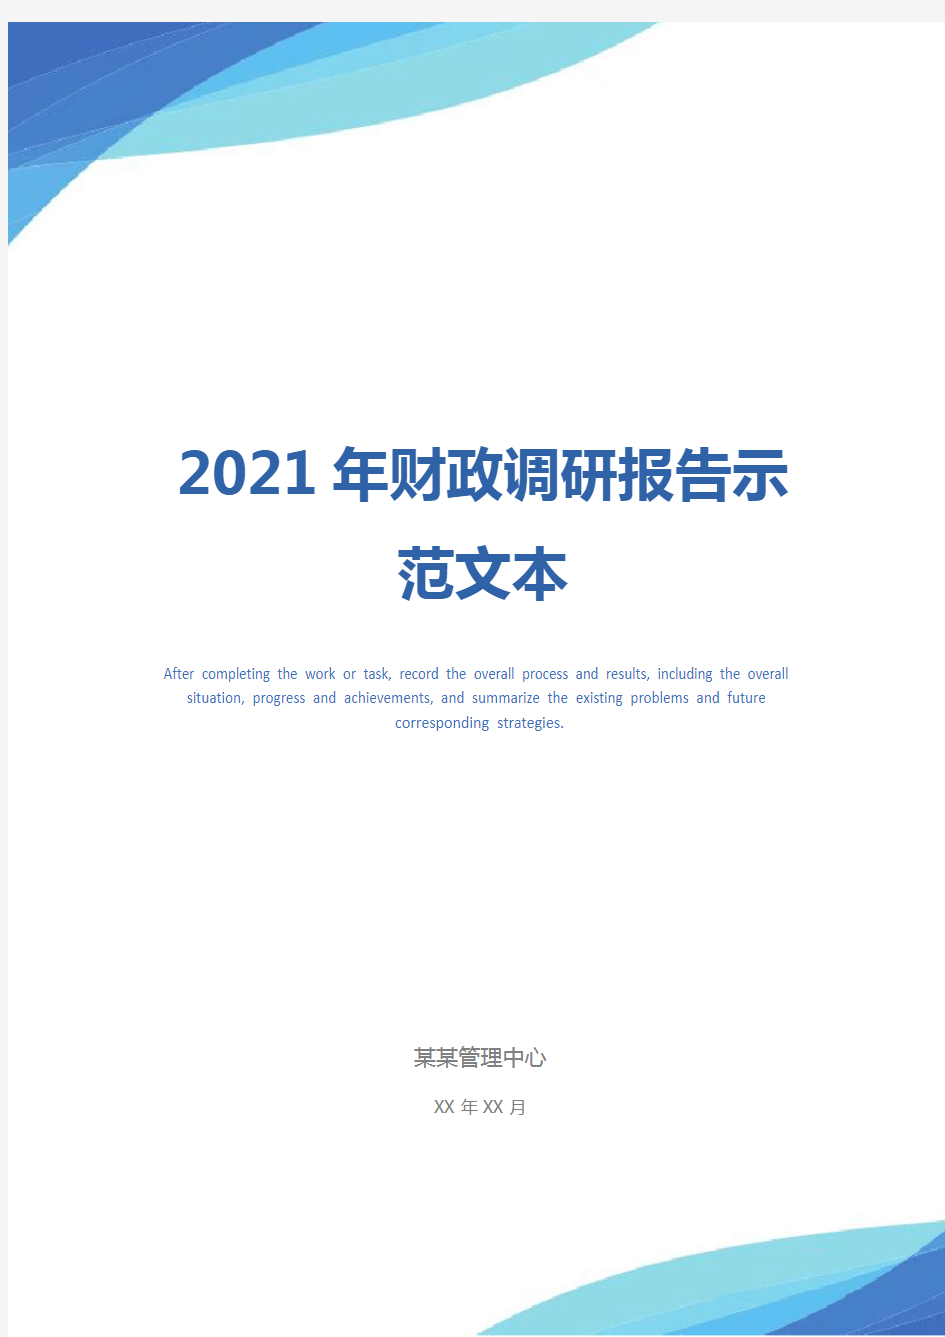 2021年财政调研报告示范文本